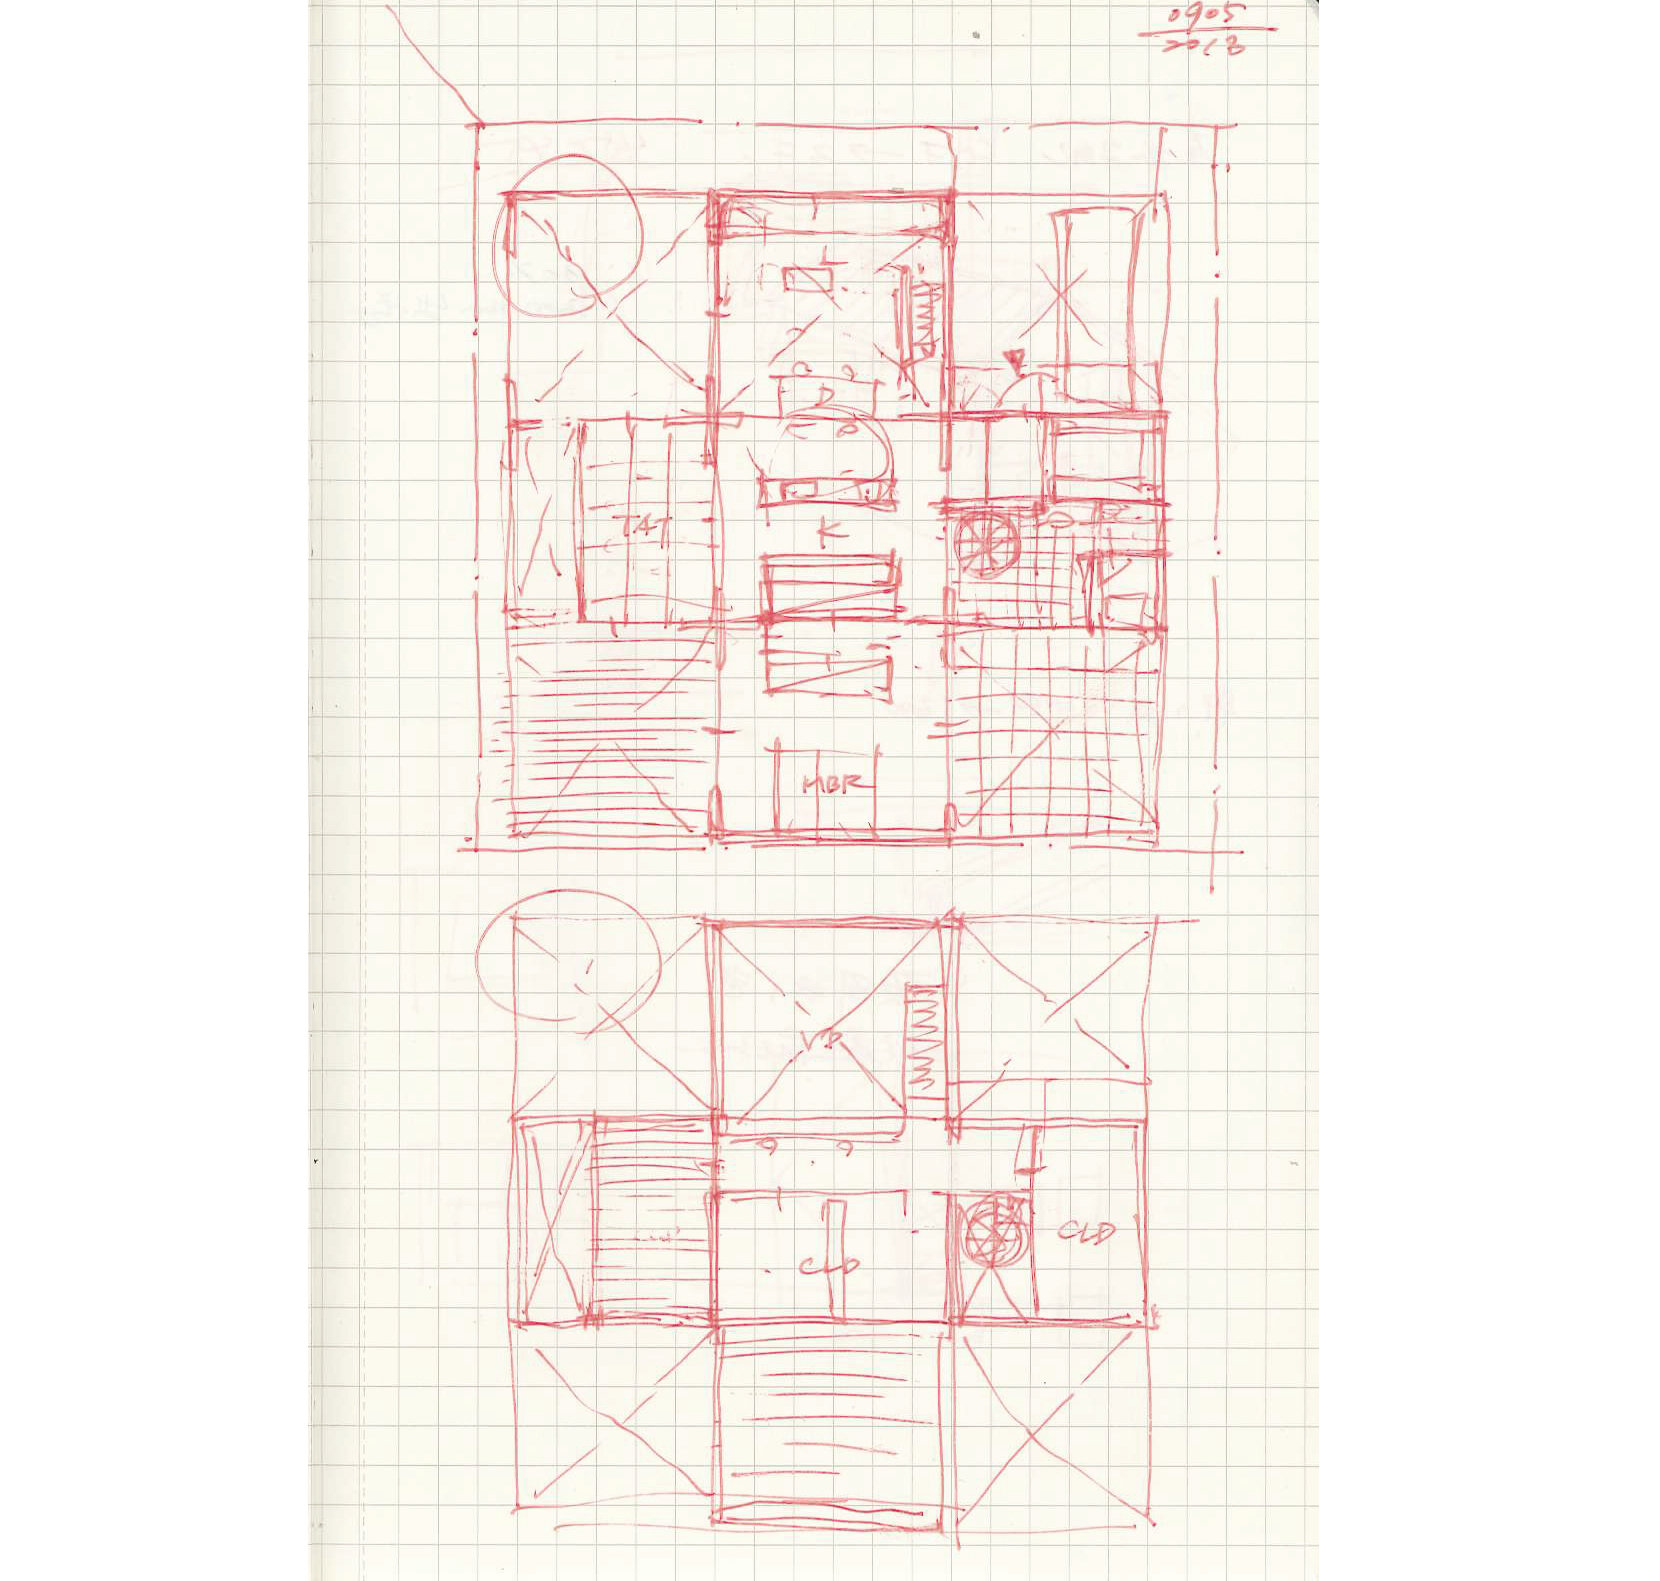  Sketch: Floor Plan 